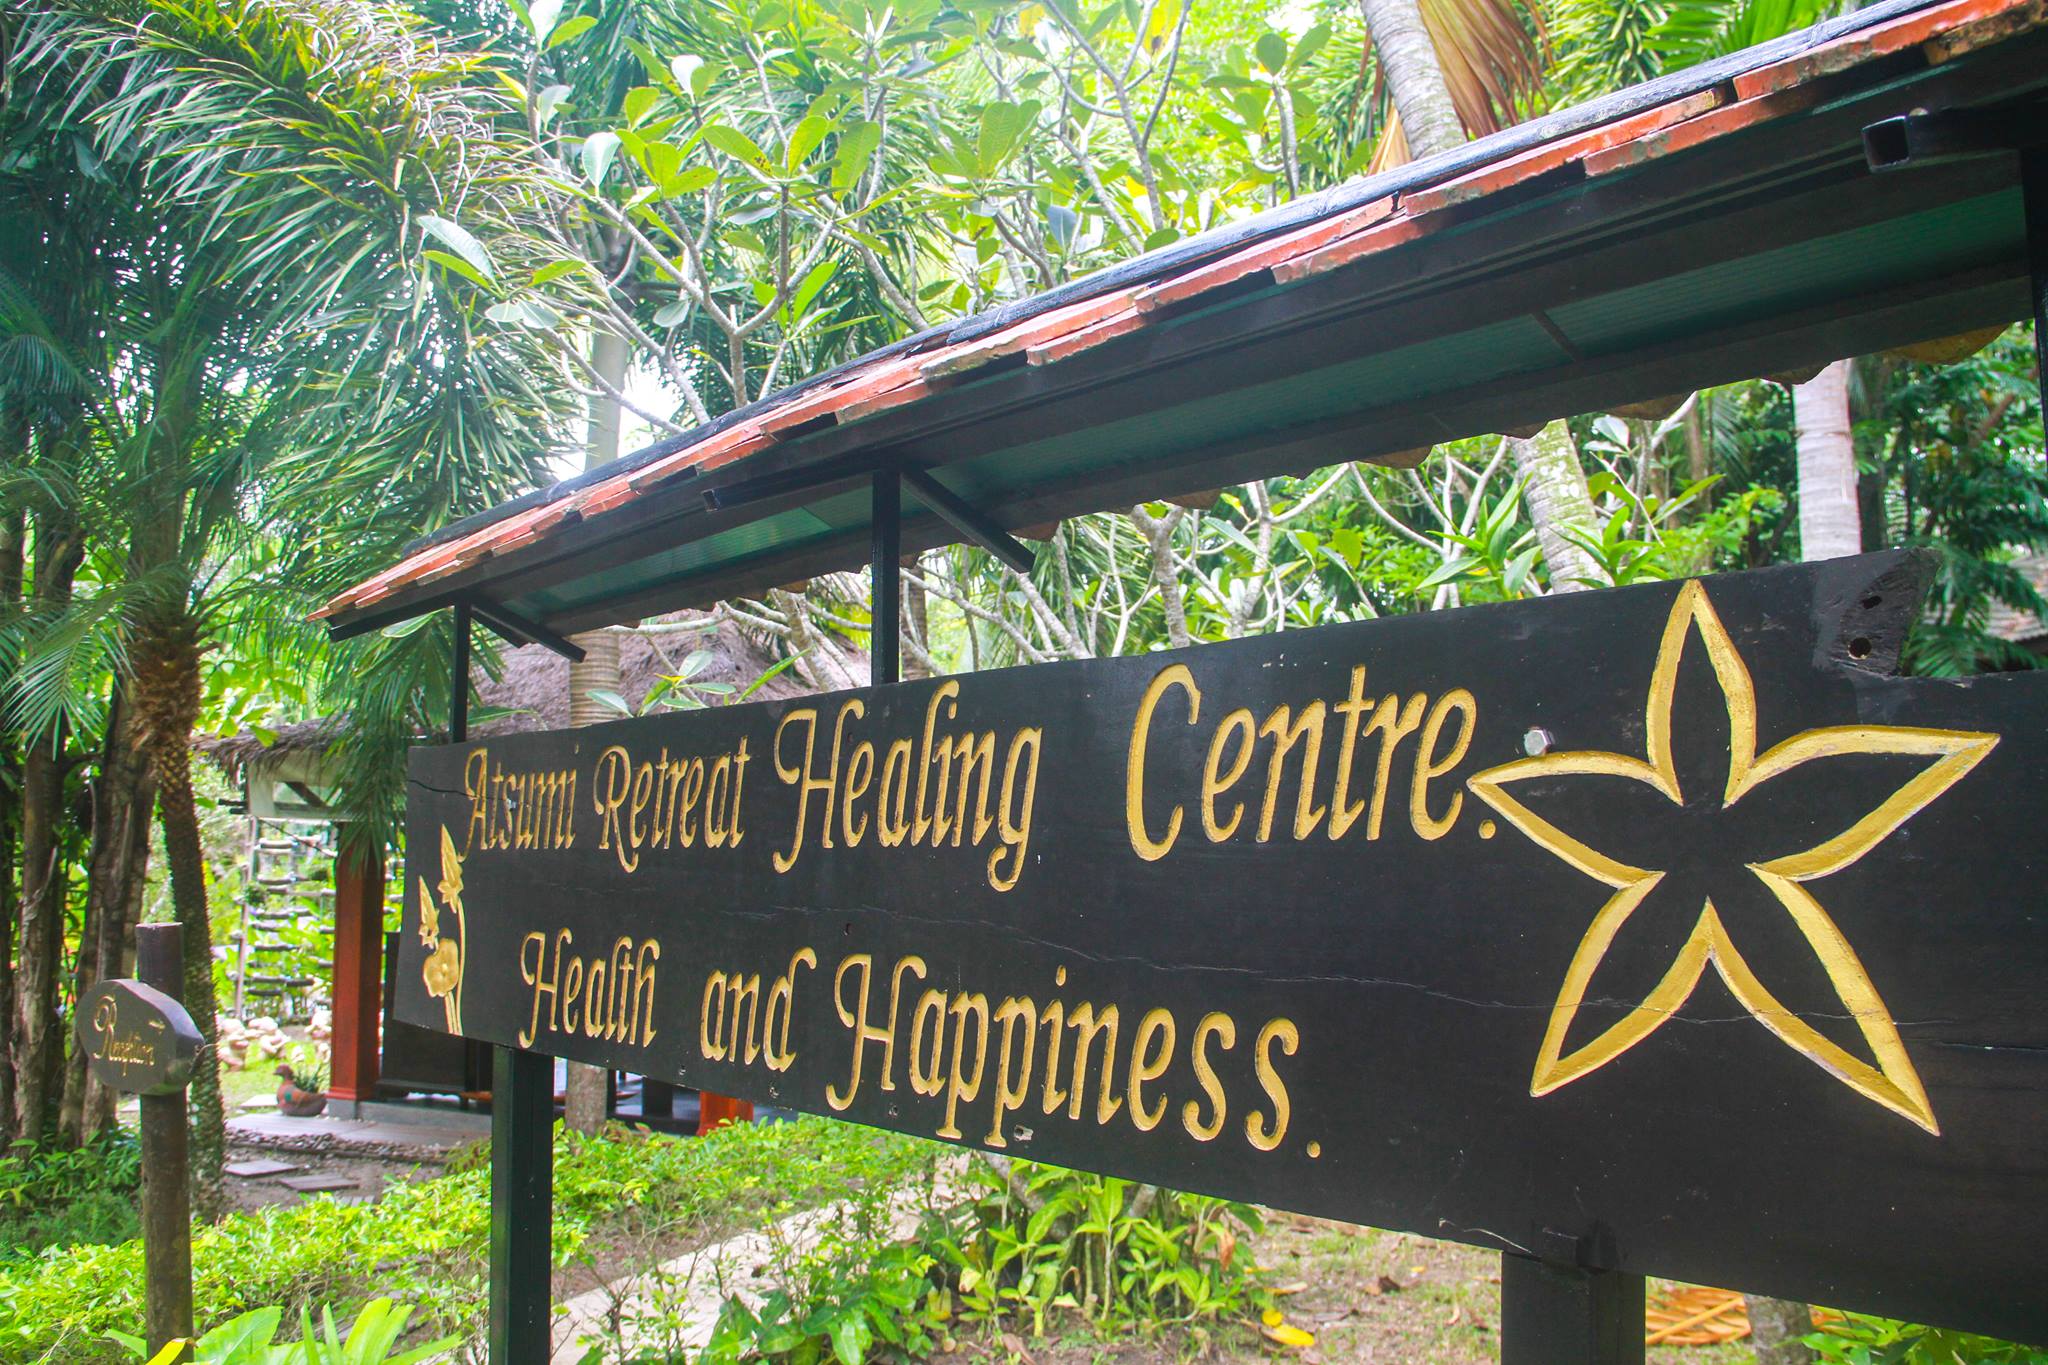 Astumi Retreat Healing Center Phuket